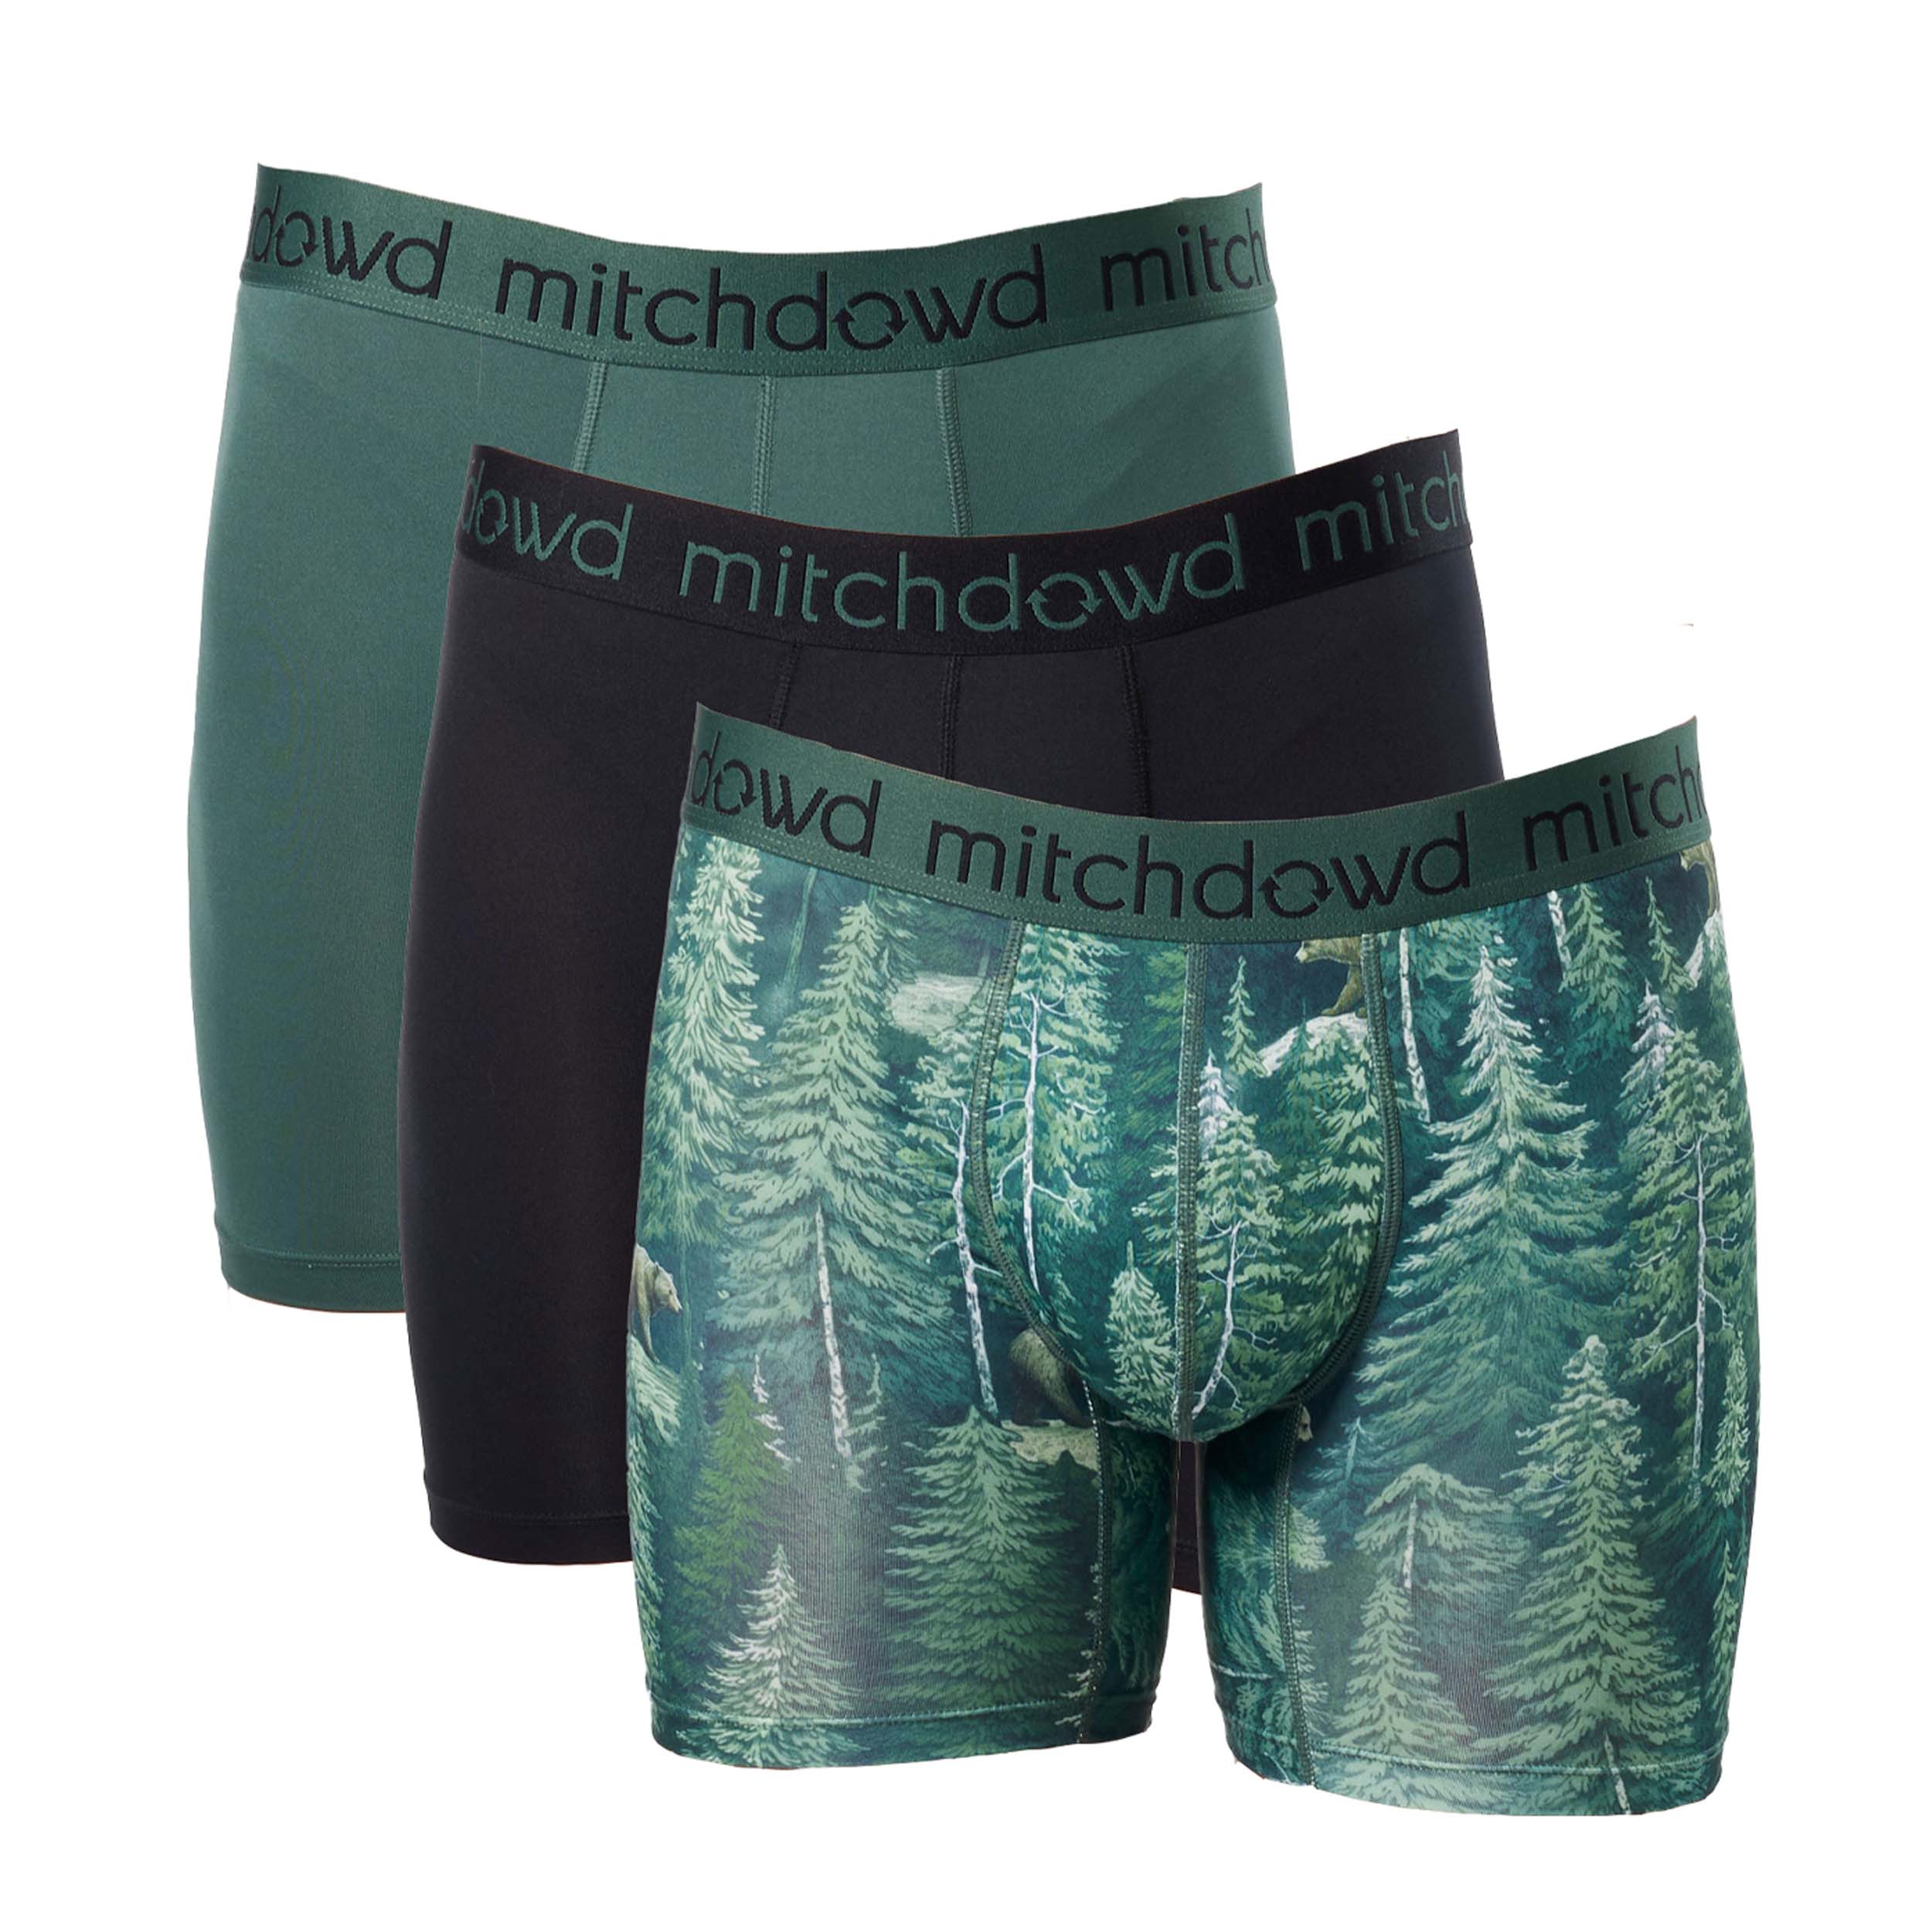 Buy Men's Recycled Underwear - Ethically Underwear & Eco Undies – Mitch Dowd